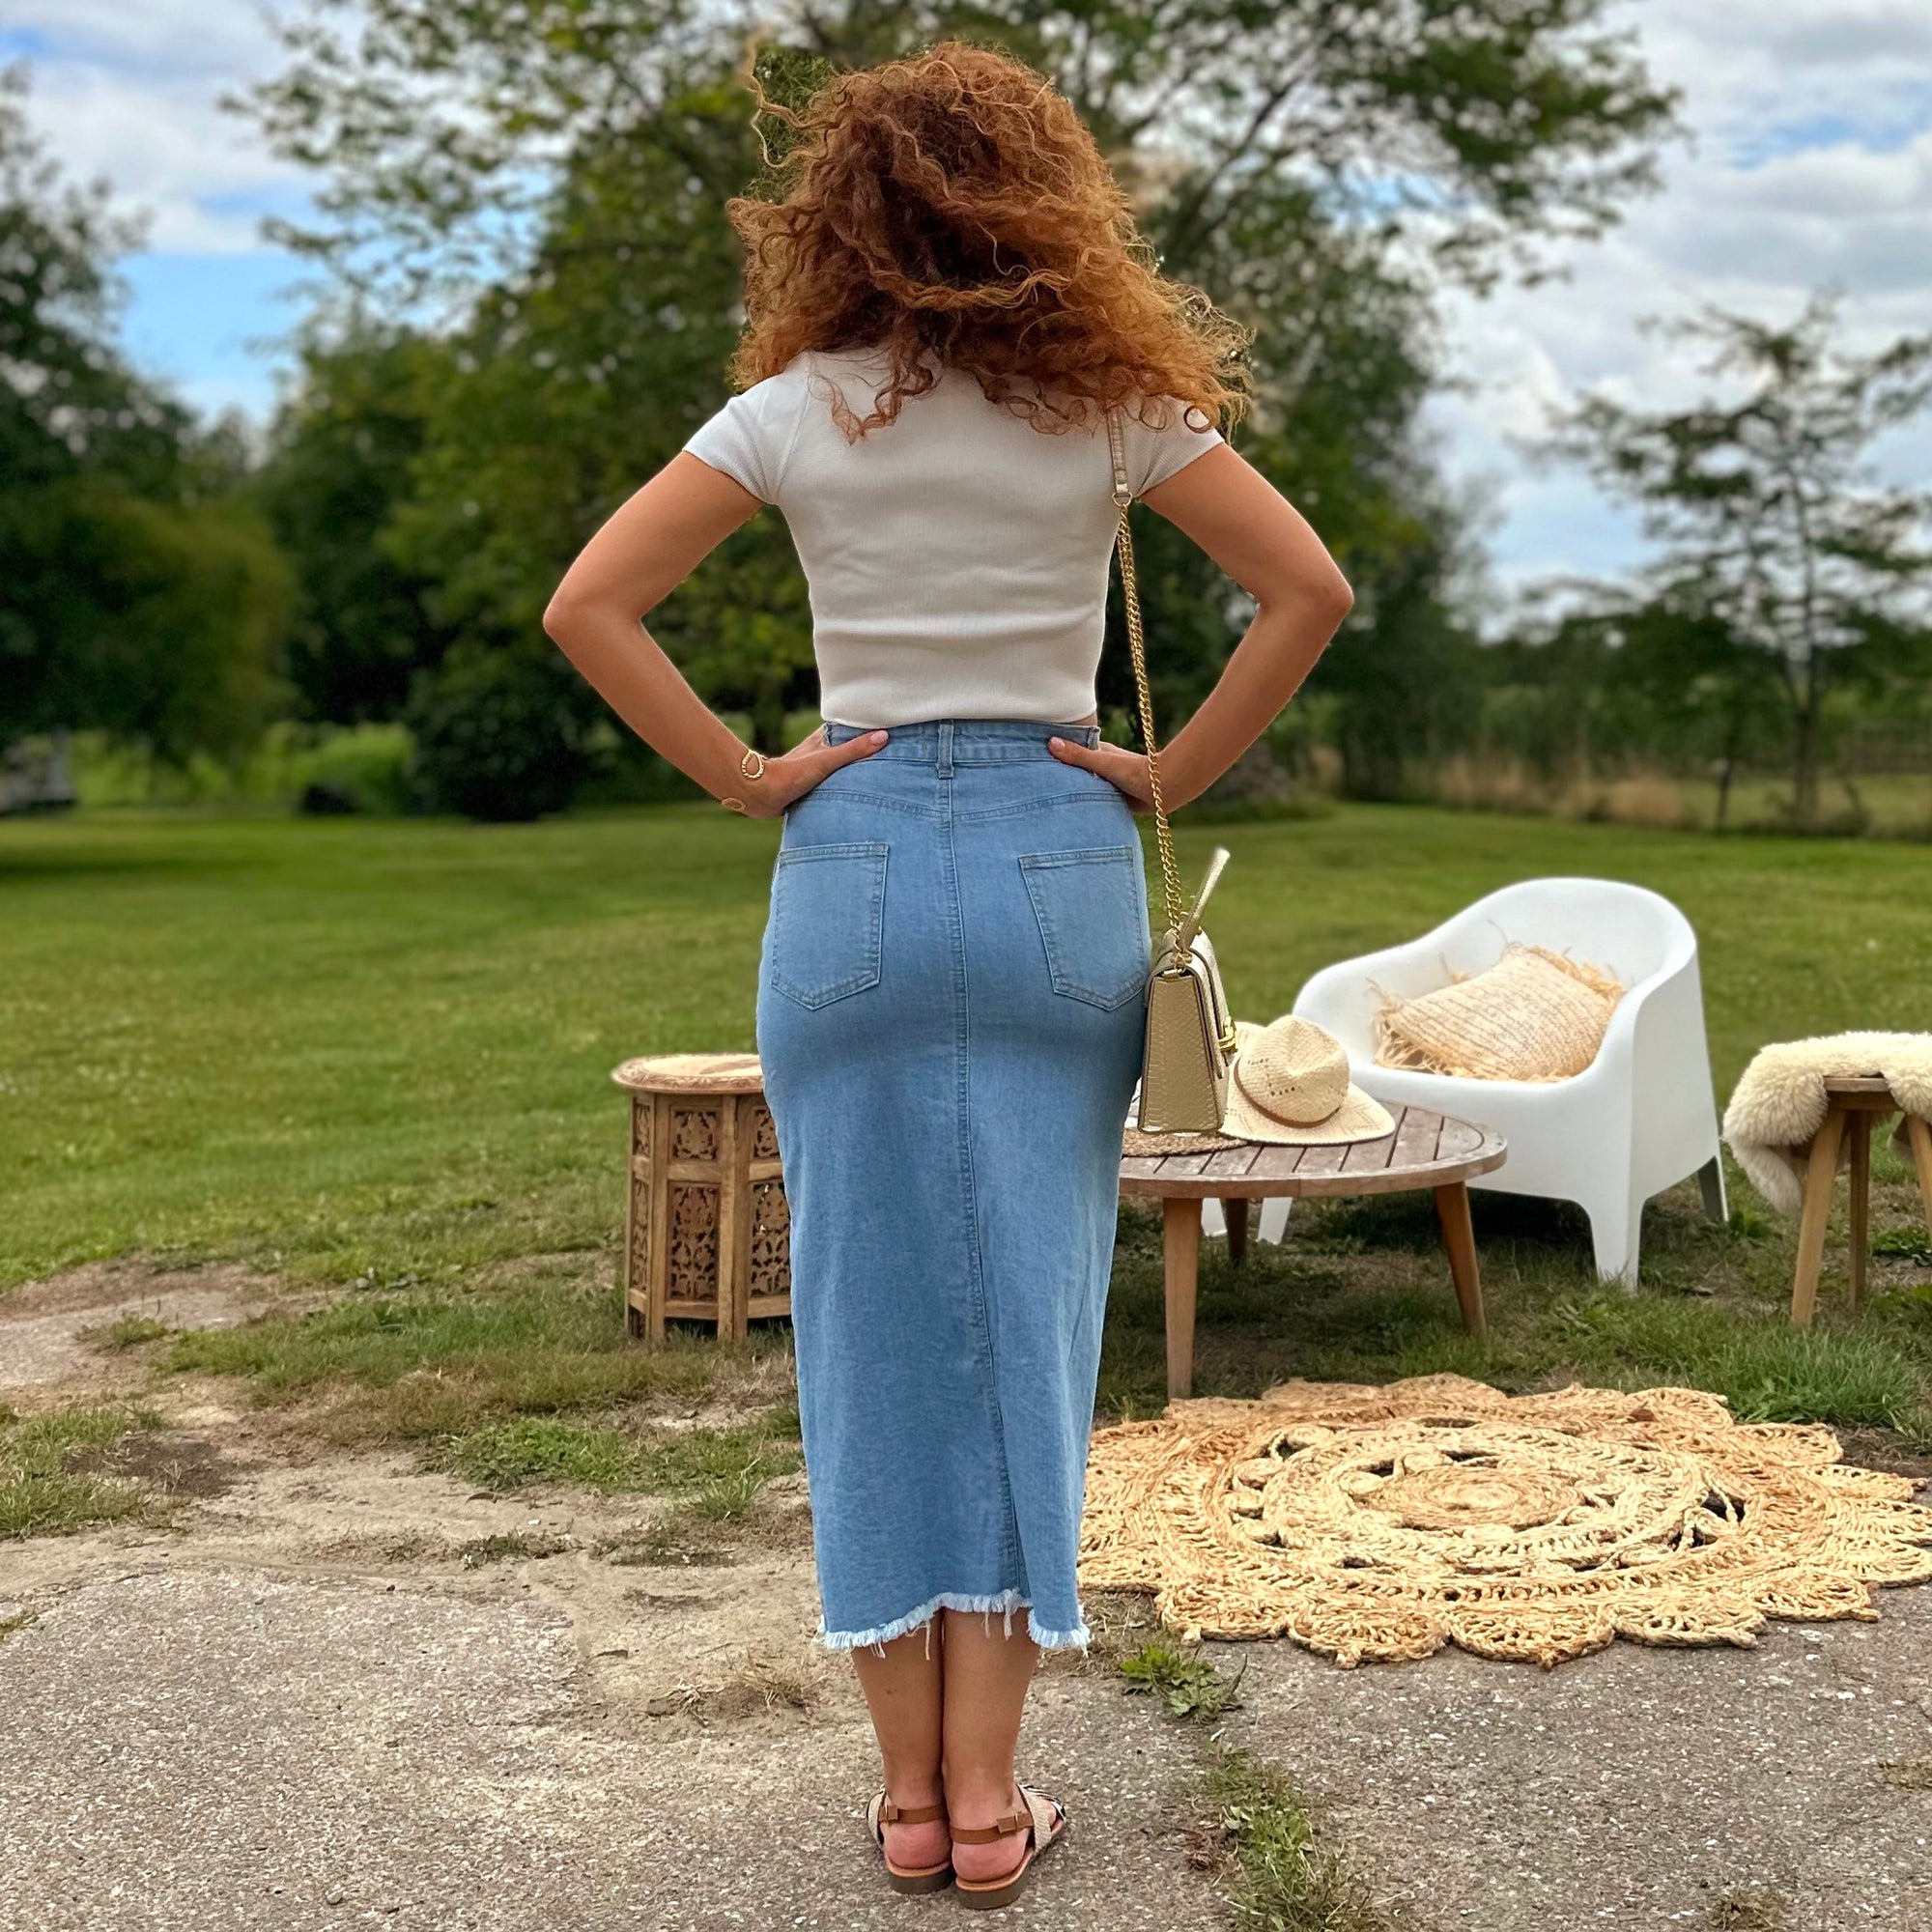 Margot split jeans skirt